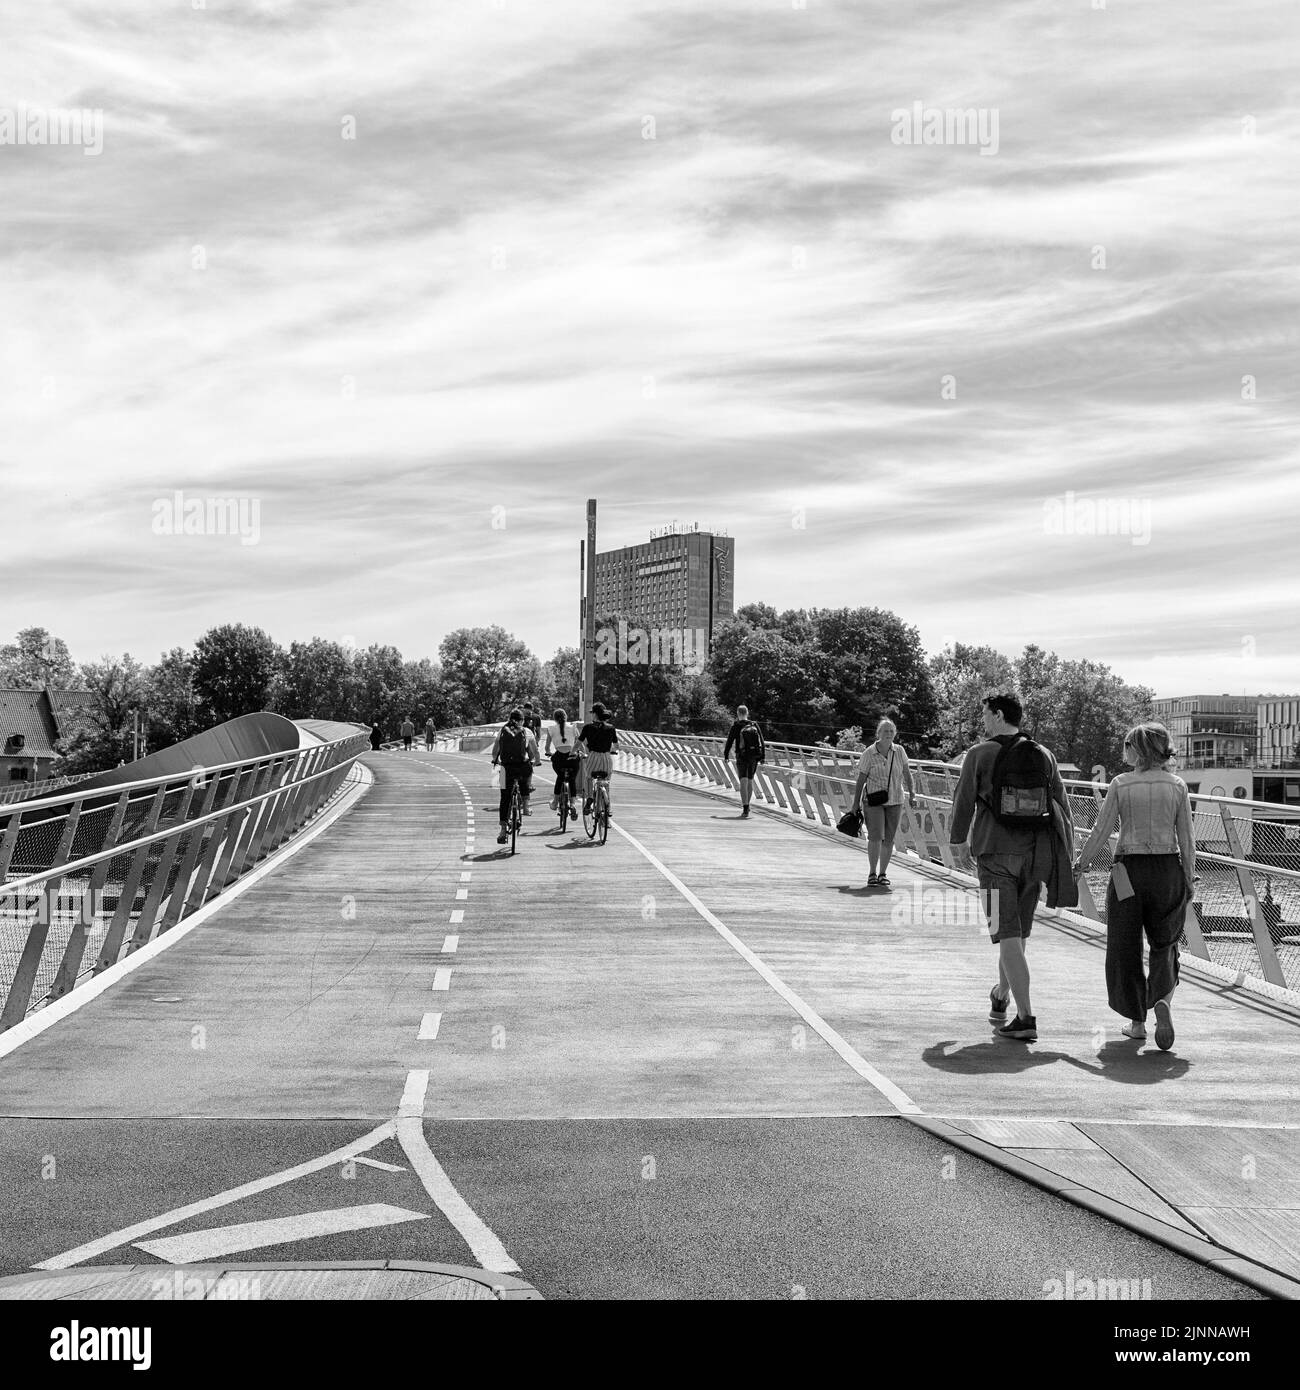 Fußgänger und Radfahrer auf Brücke über Binnenhafen, Lille Langebro Radbrücke, Verkehrssicherheit, moderne Mobilität, Architekten WilkinsonEyre und Stockfoto